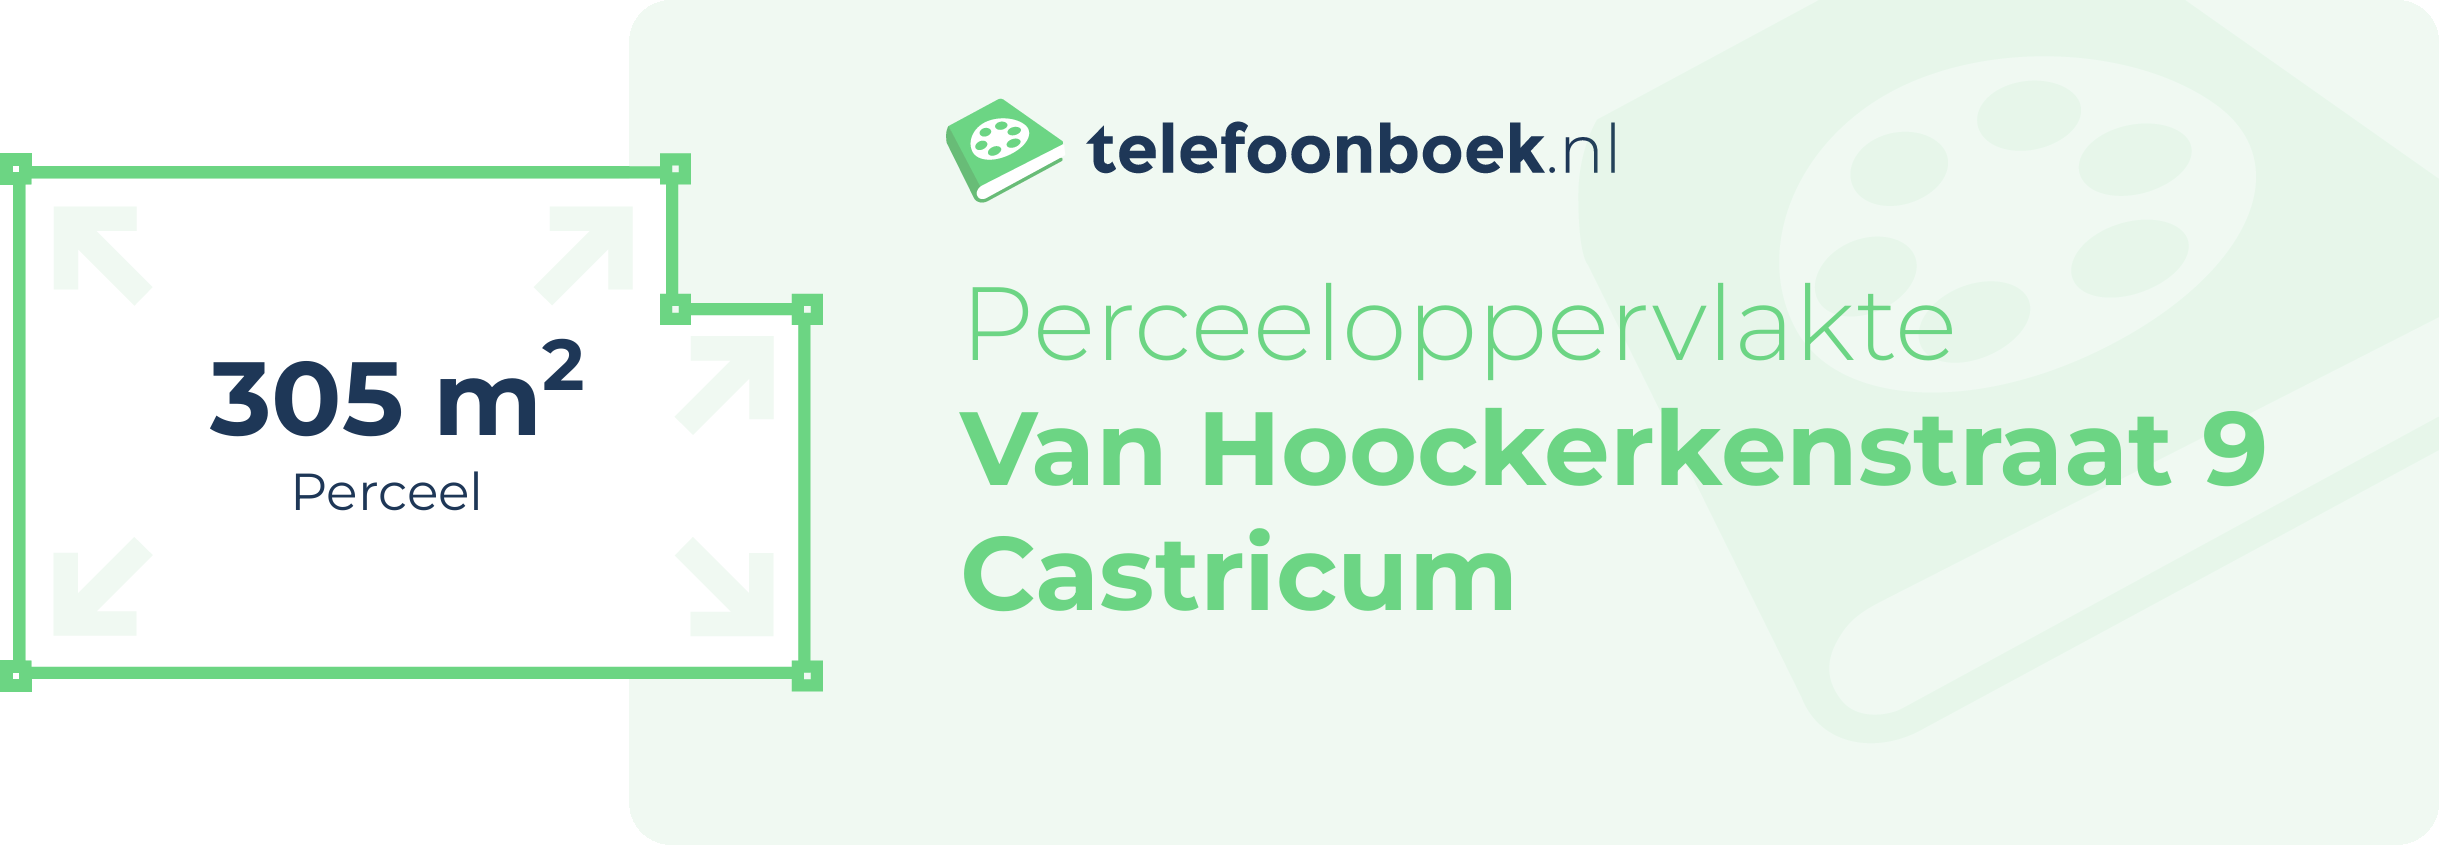 Perceeloppervlakte Van Hoockerkenstraat 9 Castricum